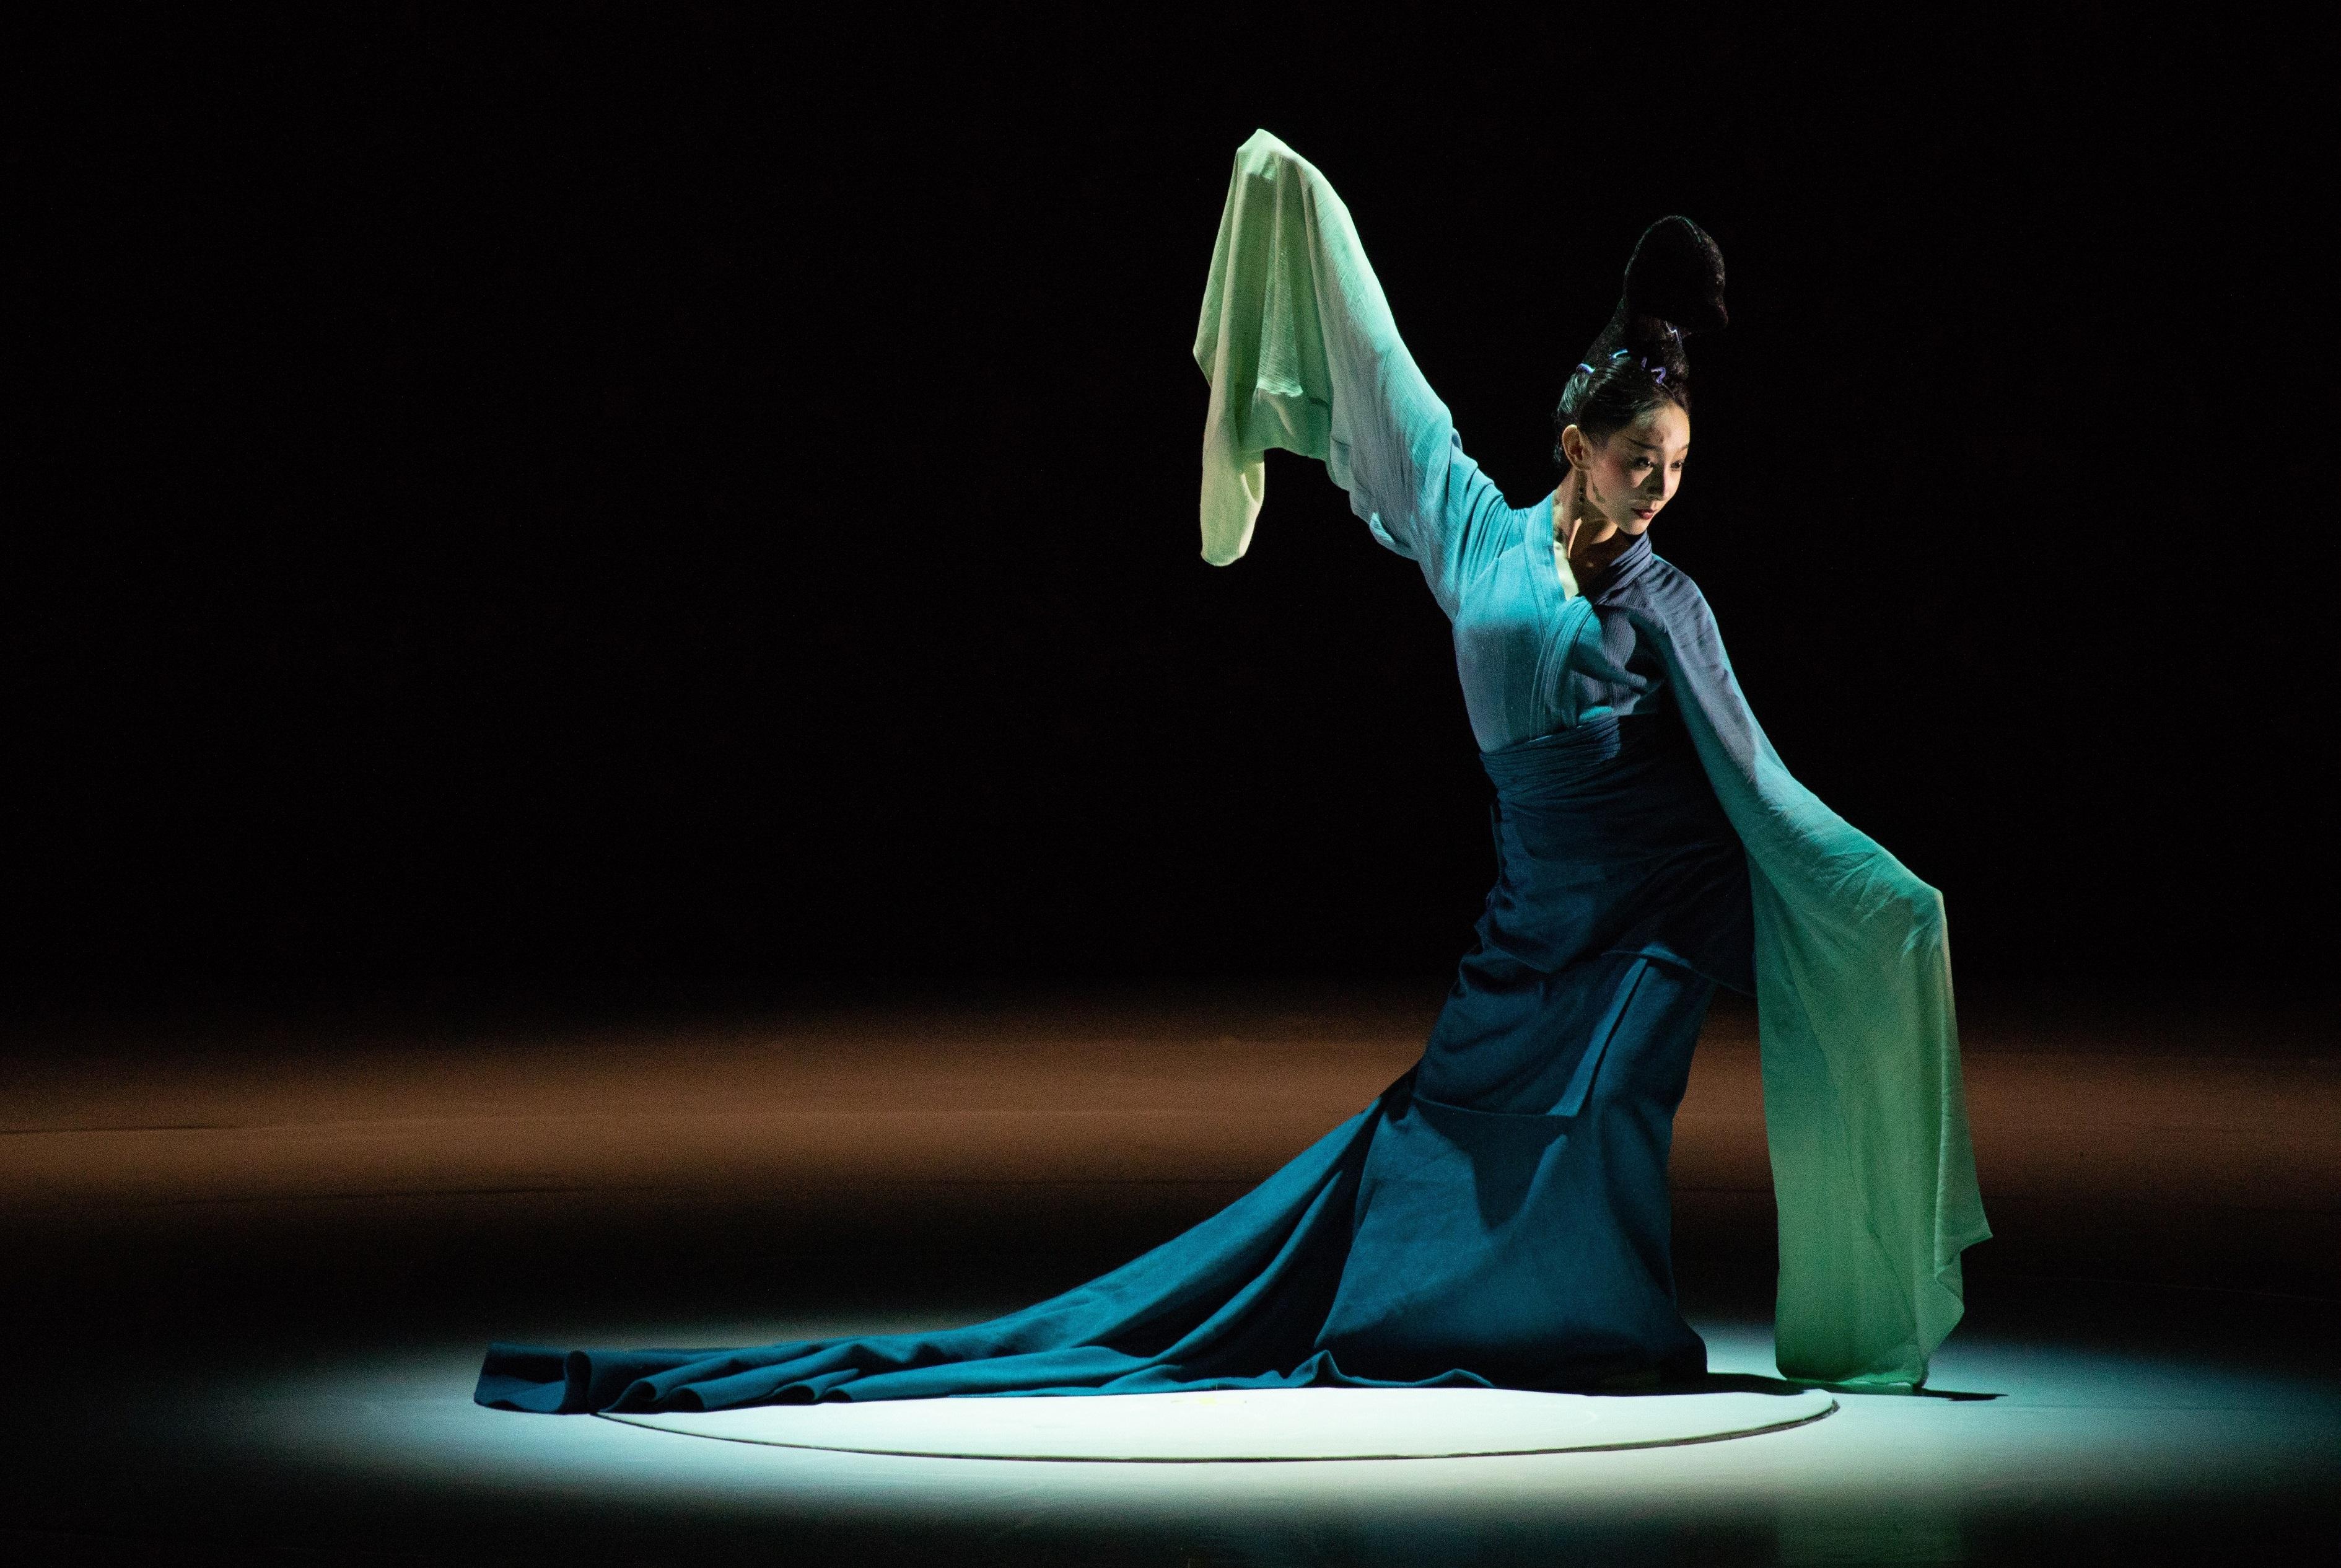 康乐及文化事务署明年一月呈献由中国东方演艺集团创演的得奖舞蹈诗剧《只此青绿》—舞绘《千里江山图》。图示舞蹈诗剧《只此青绿》剧照。